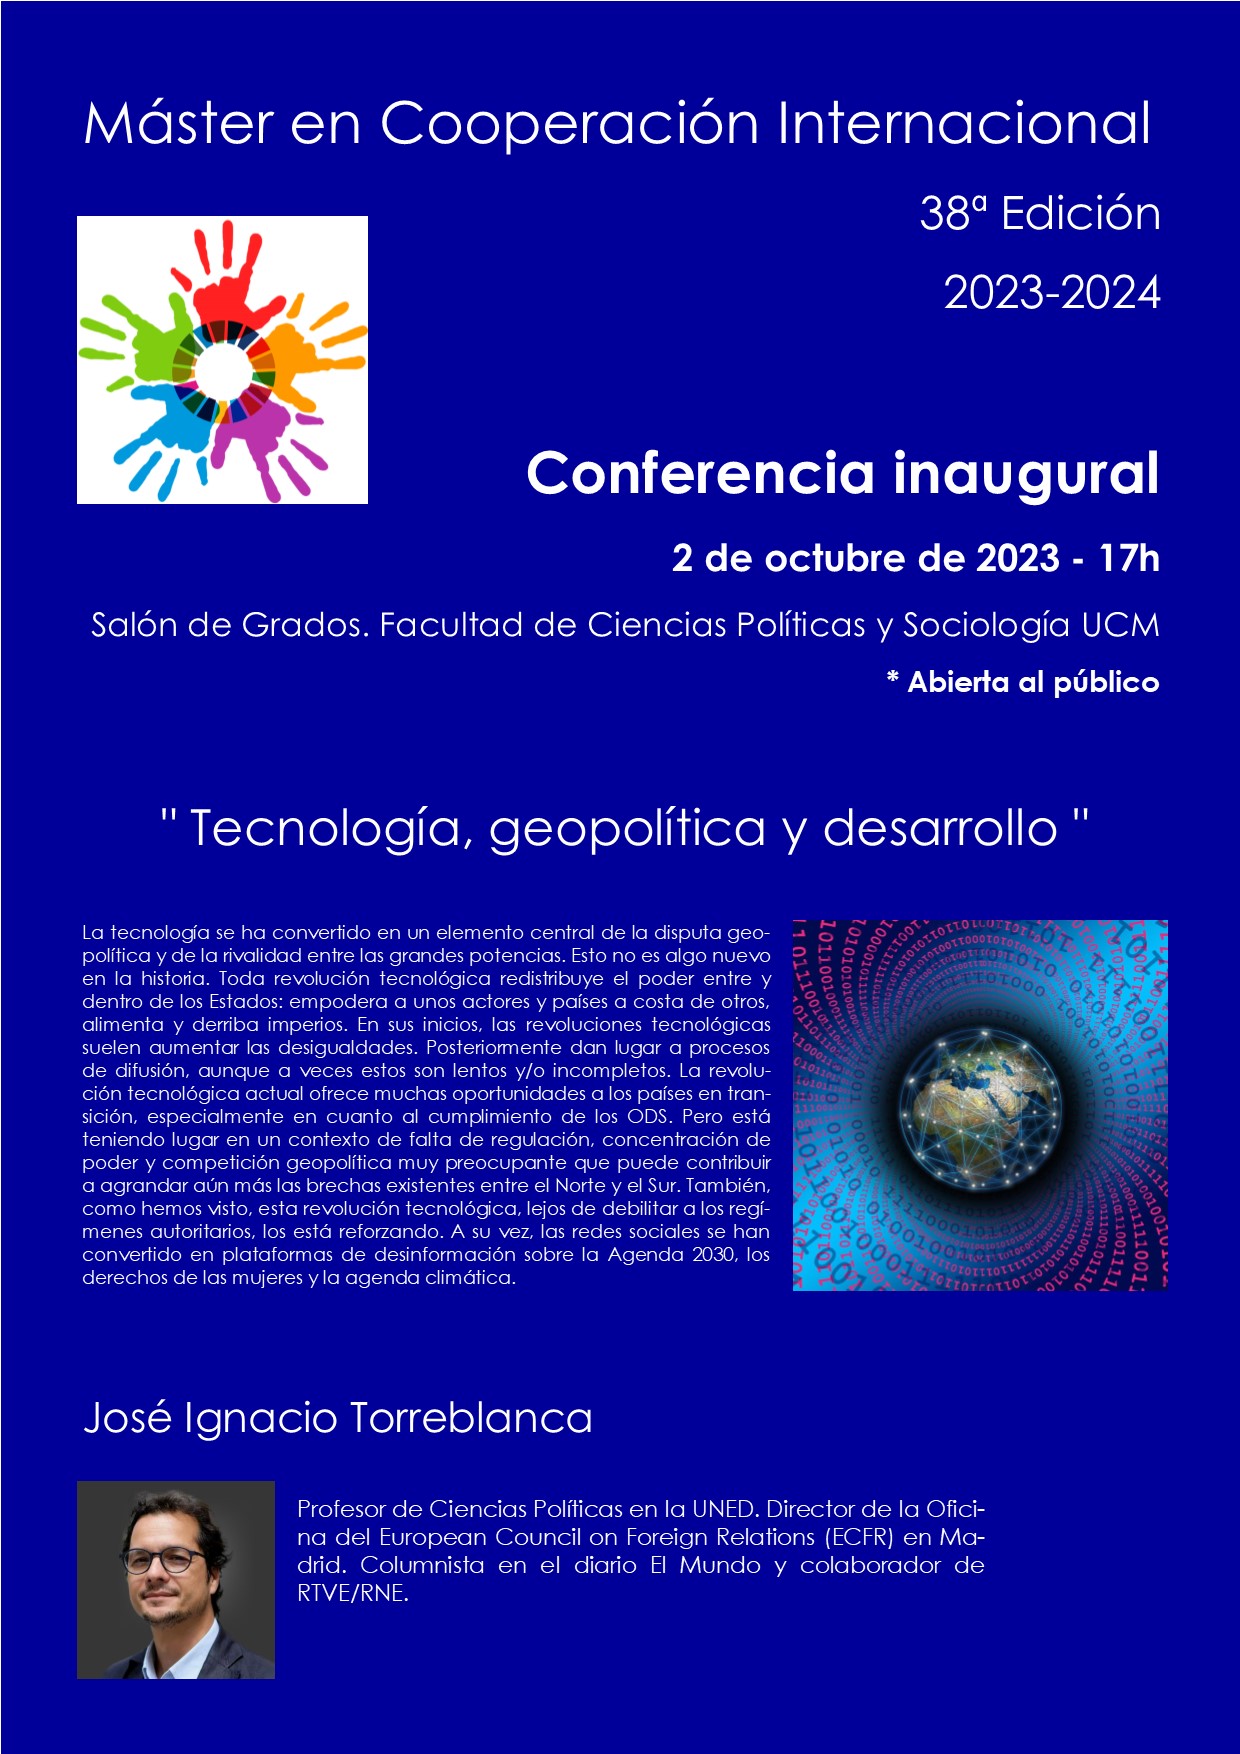 Conferencia Inaugural del Máster en Cooperación Internacional: "Tecnología, geopolítica y desarrollo", a cargo de José Ignacio Torreblanca